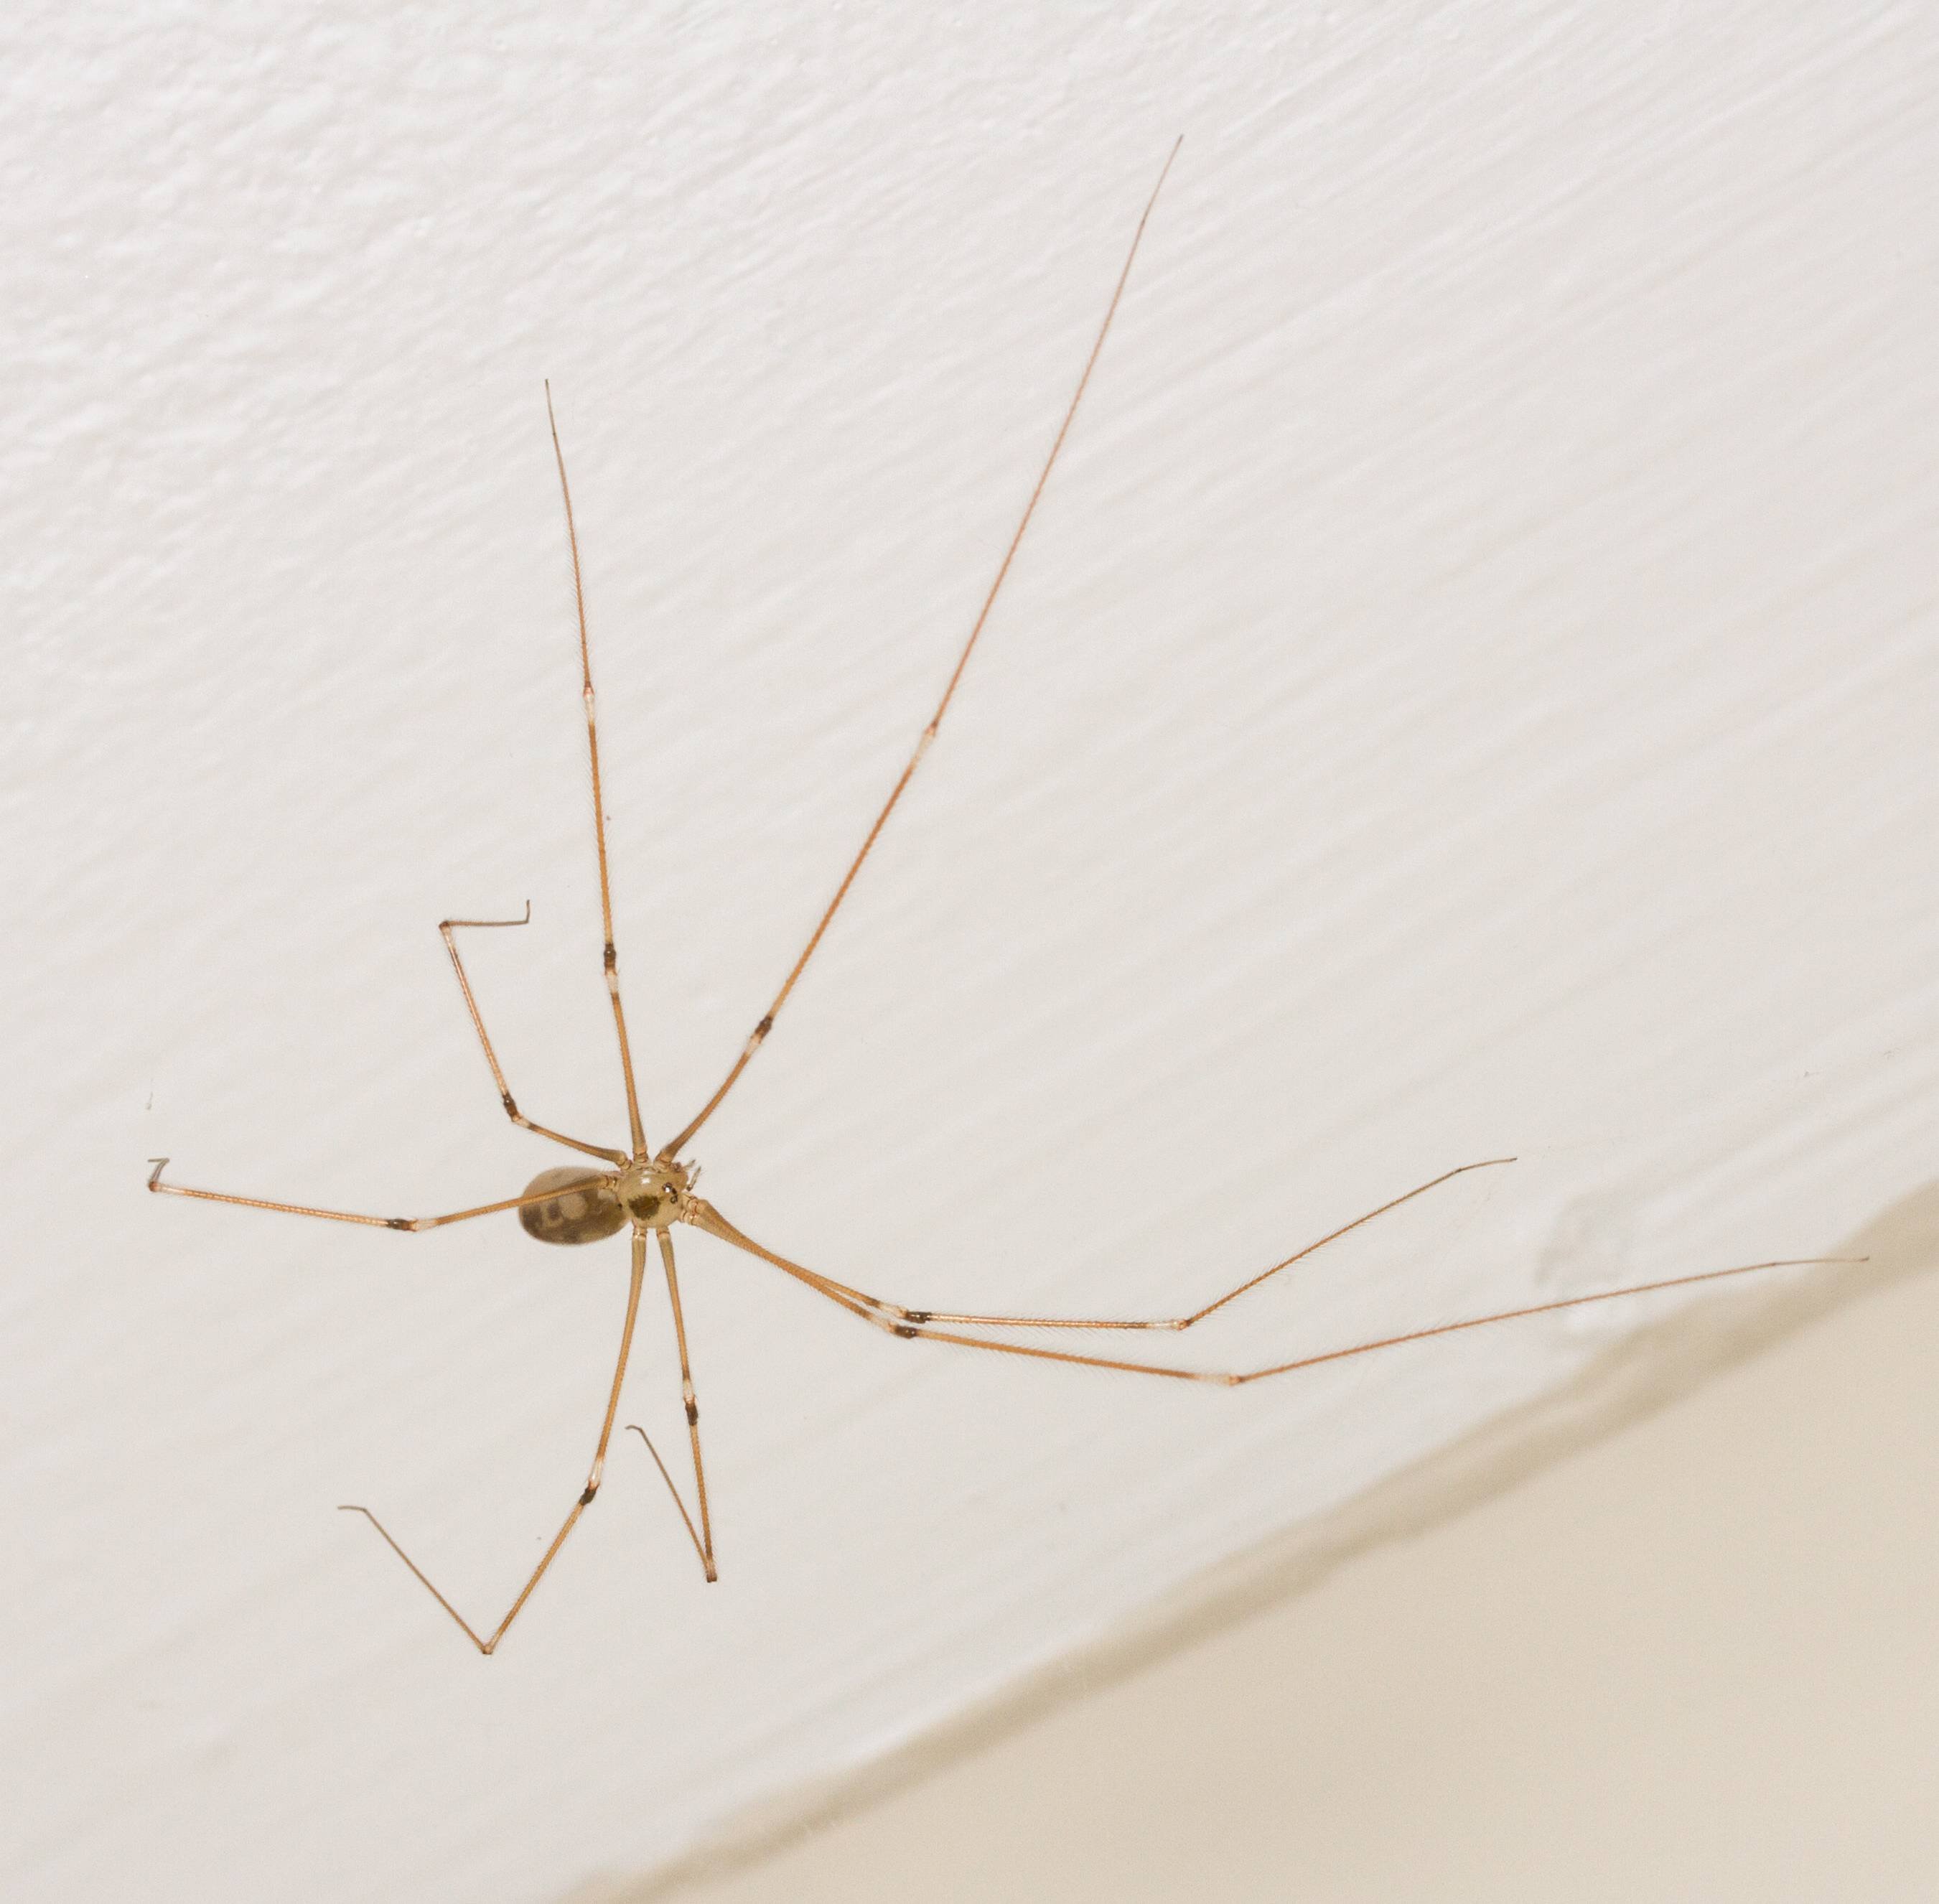 Домашний паук в квартире. Паук сенокосец в квартире. Комар сенокосец. Сенокосец белый. Домашний паук.